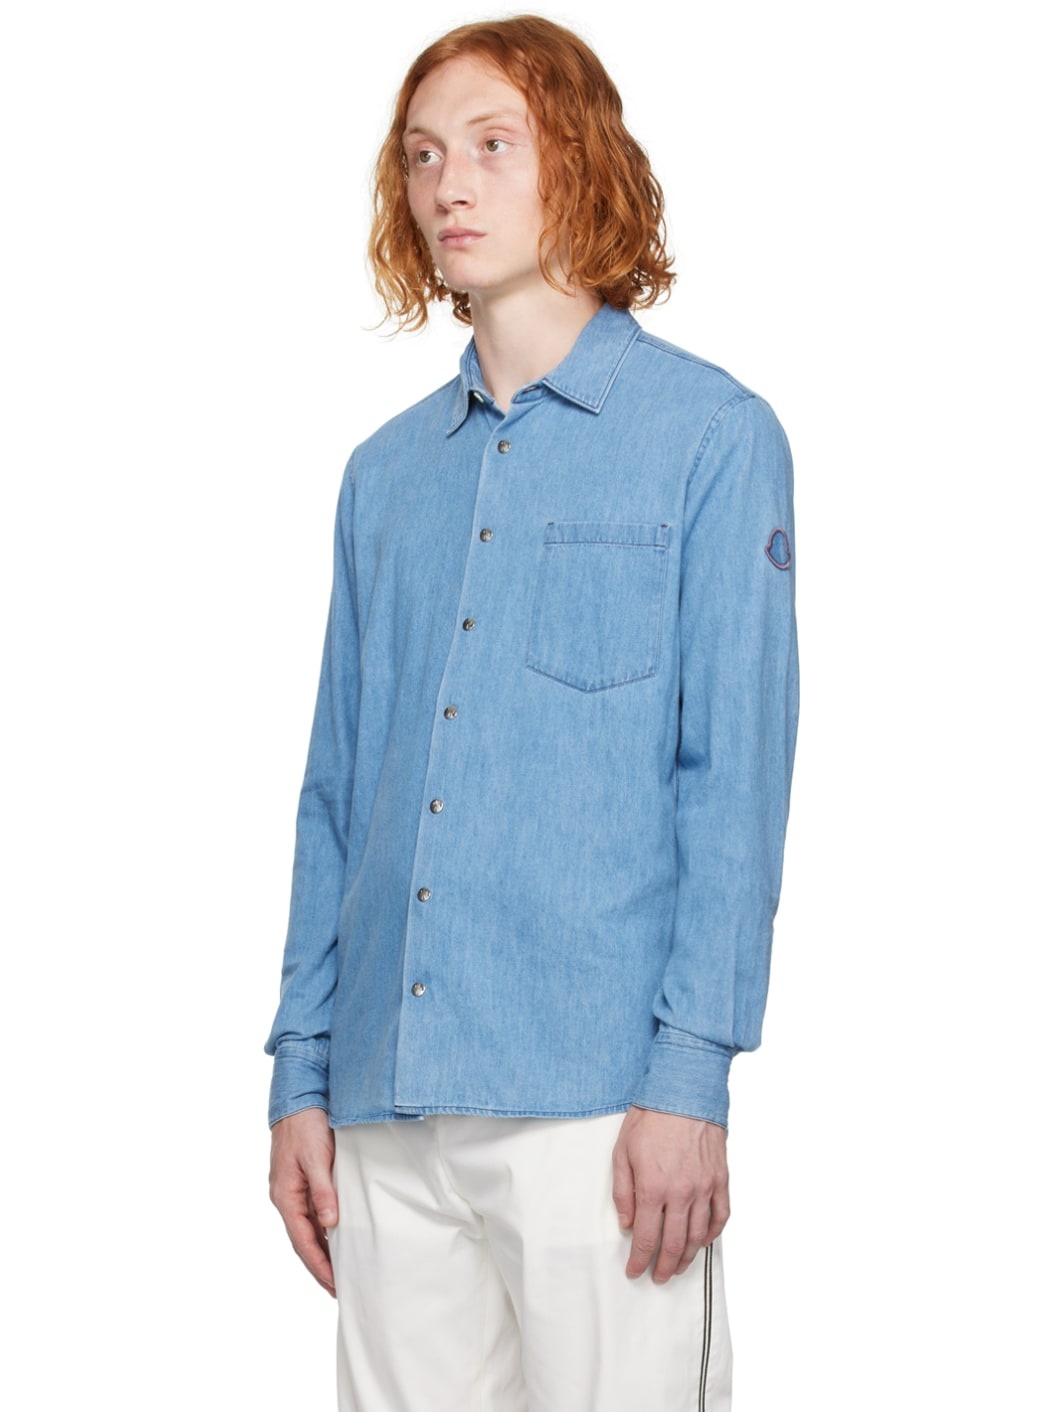 Blue Press-Stud Shirt - 4